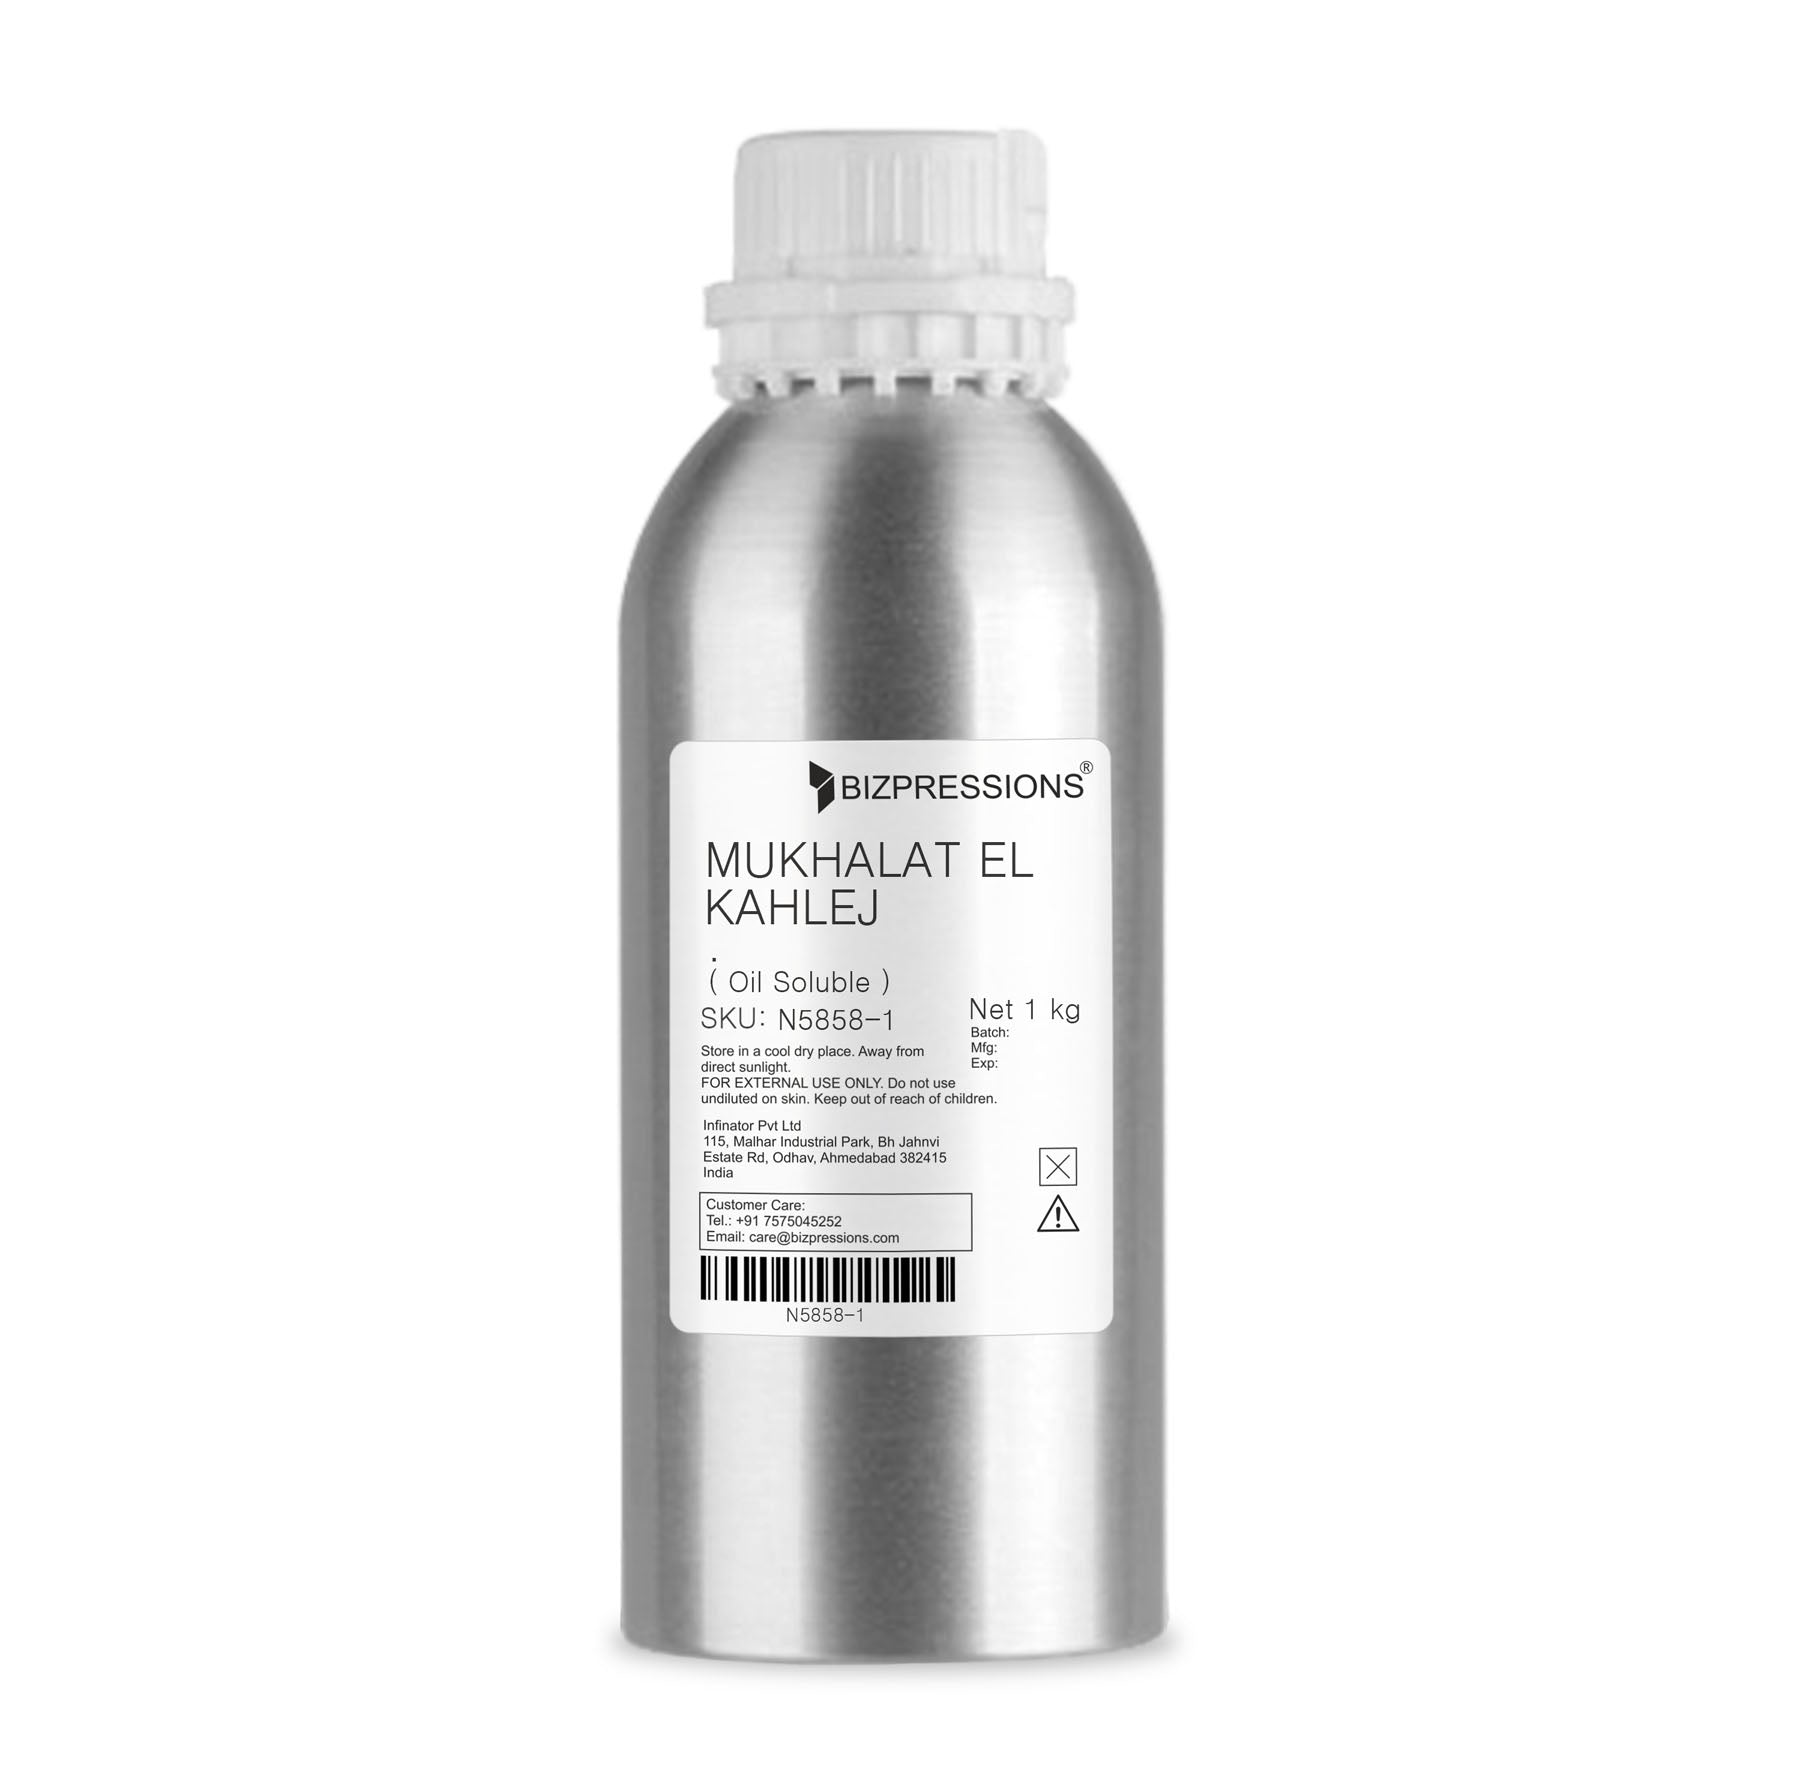 MUKHALAT EL KAHLEJ - Fragrance ( Oil Soluble ) - 1 kg